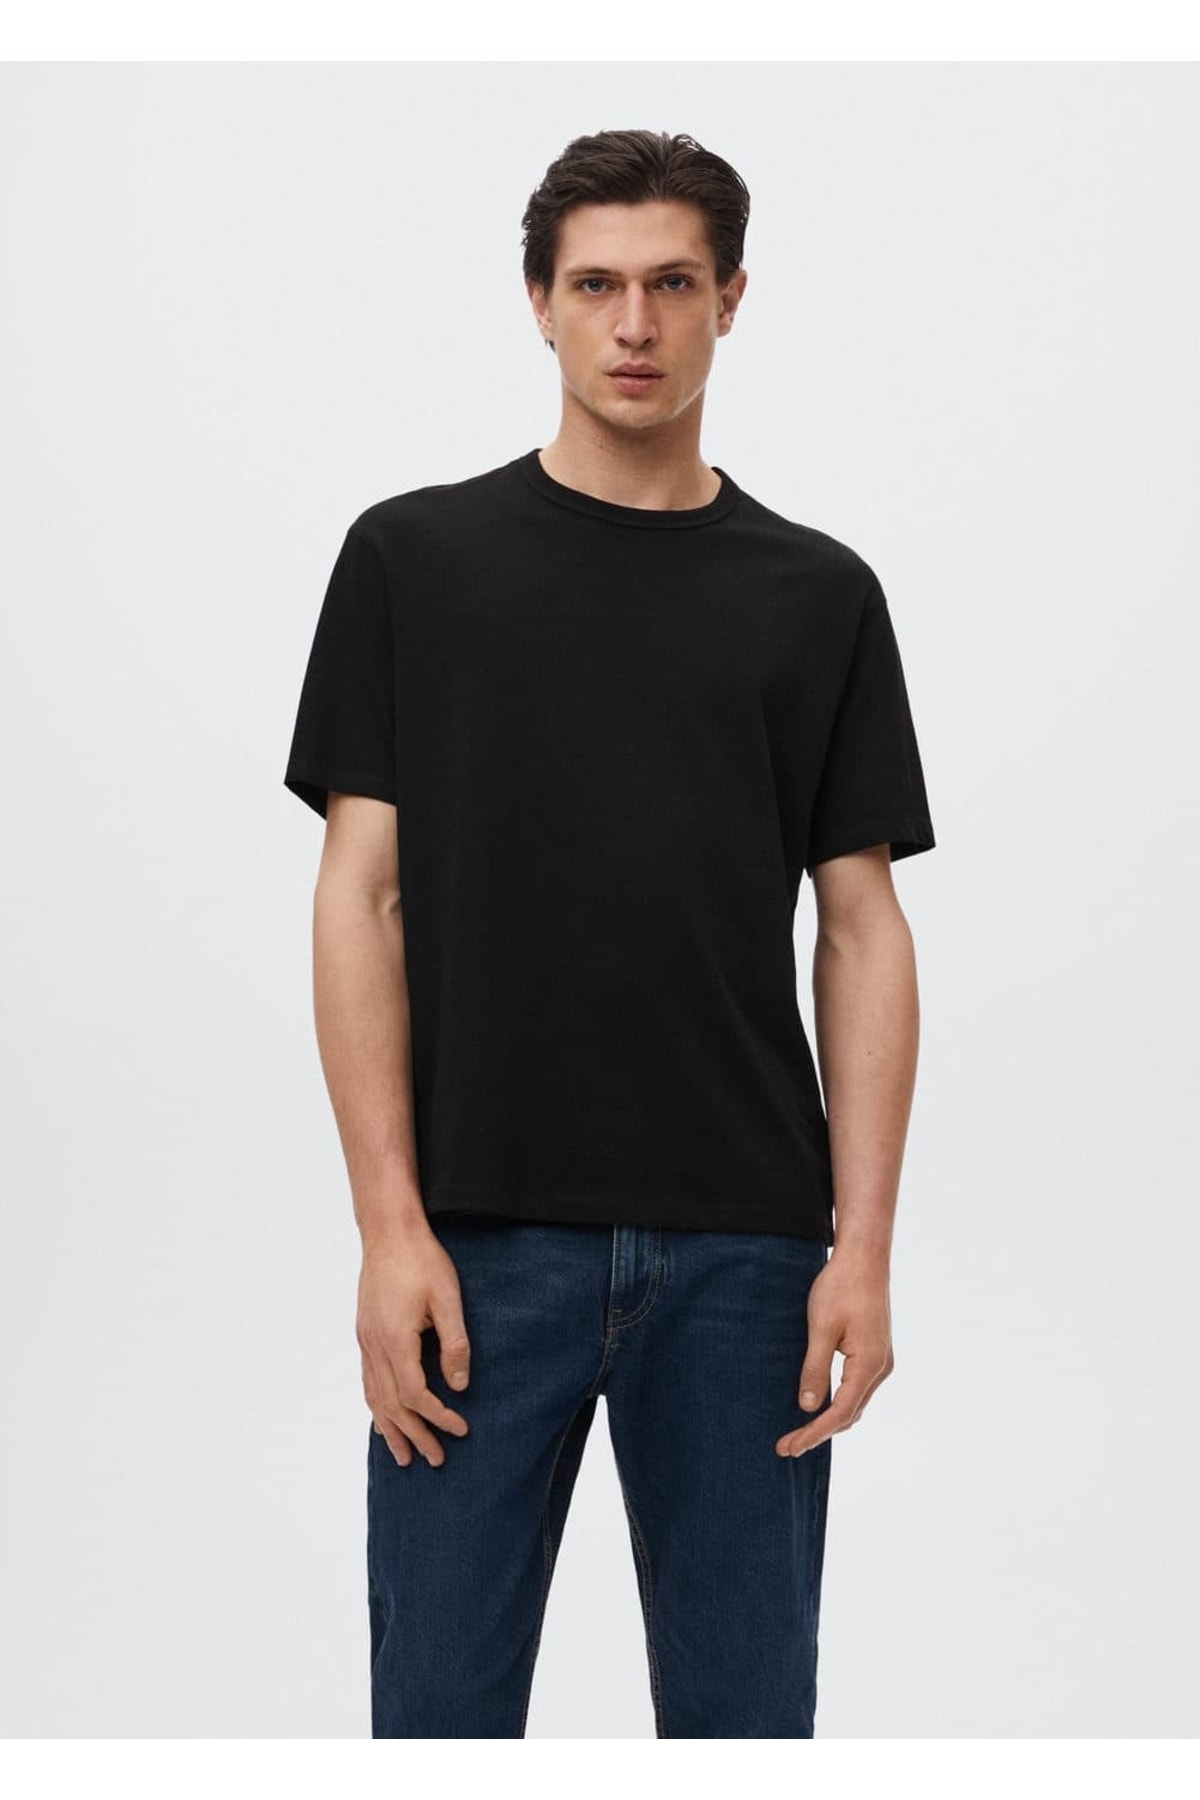 تصویر تی شرت اورجینال مردانه برند Mango کد b37001033 